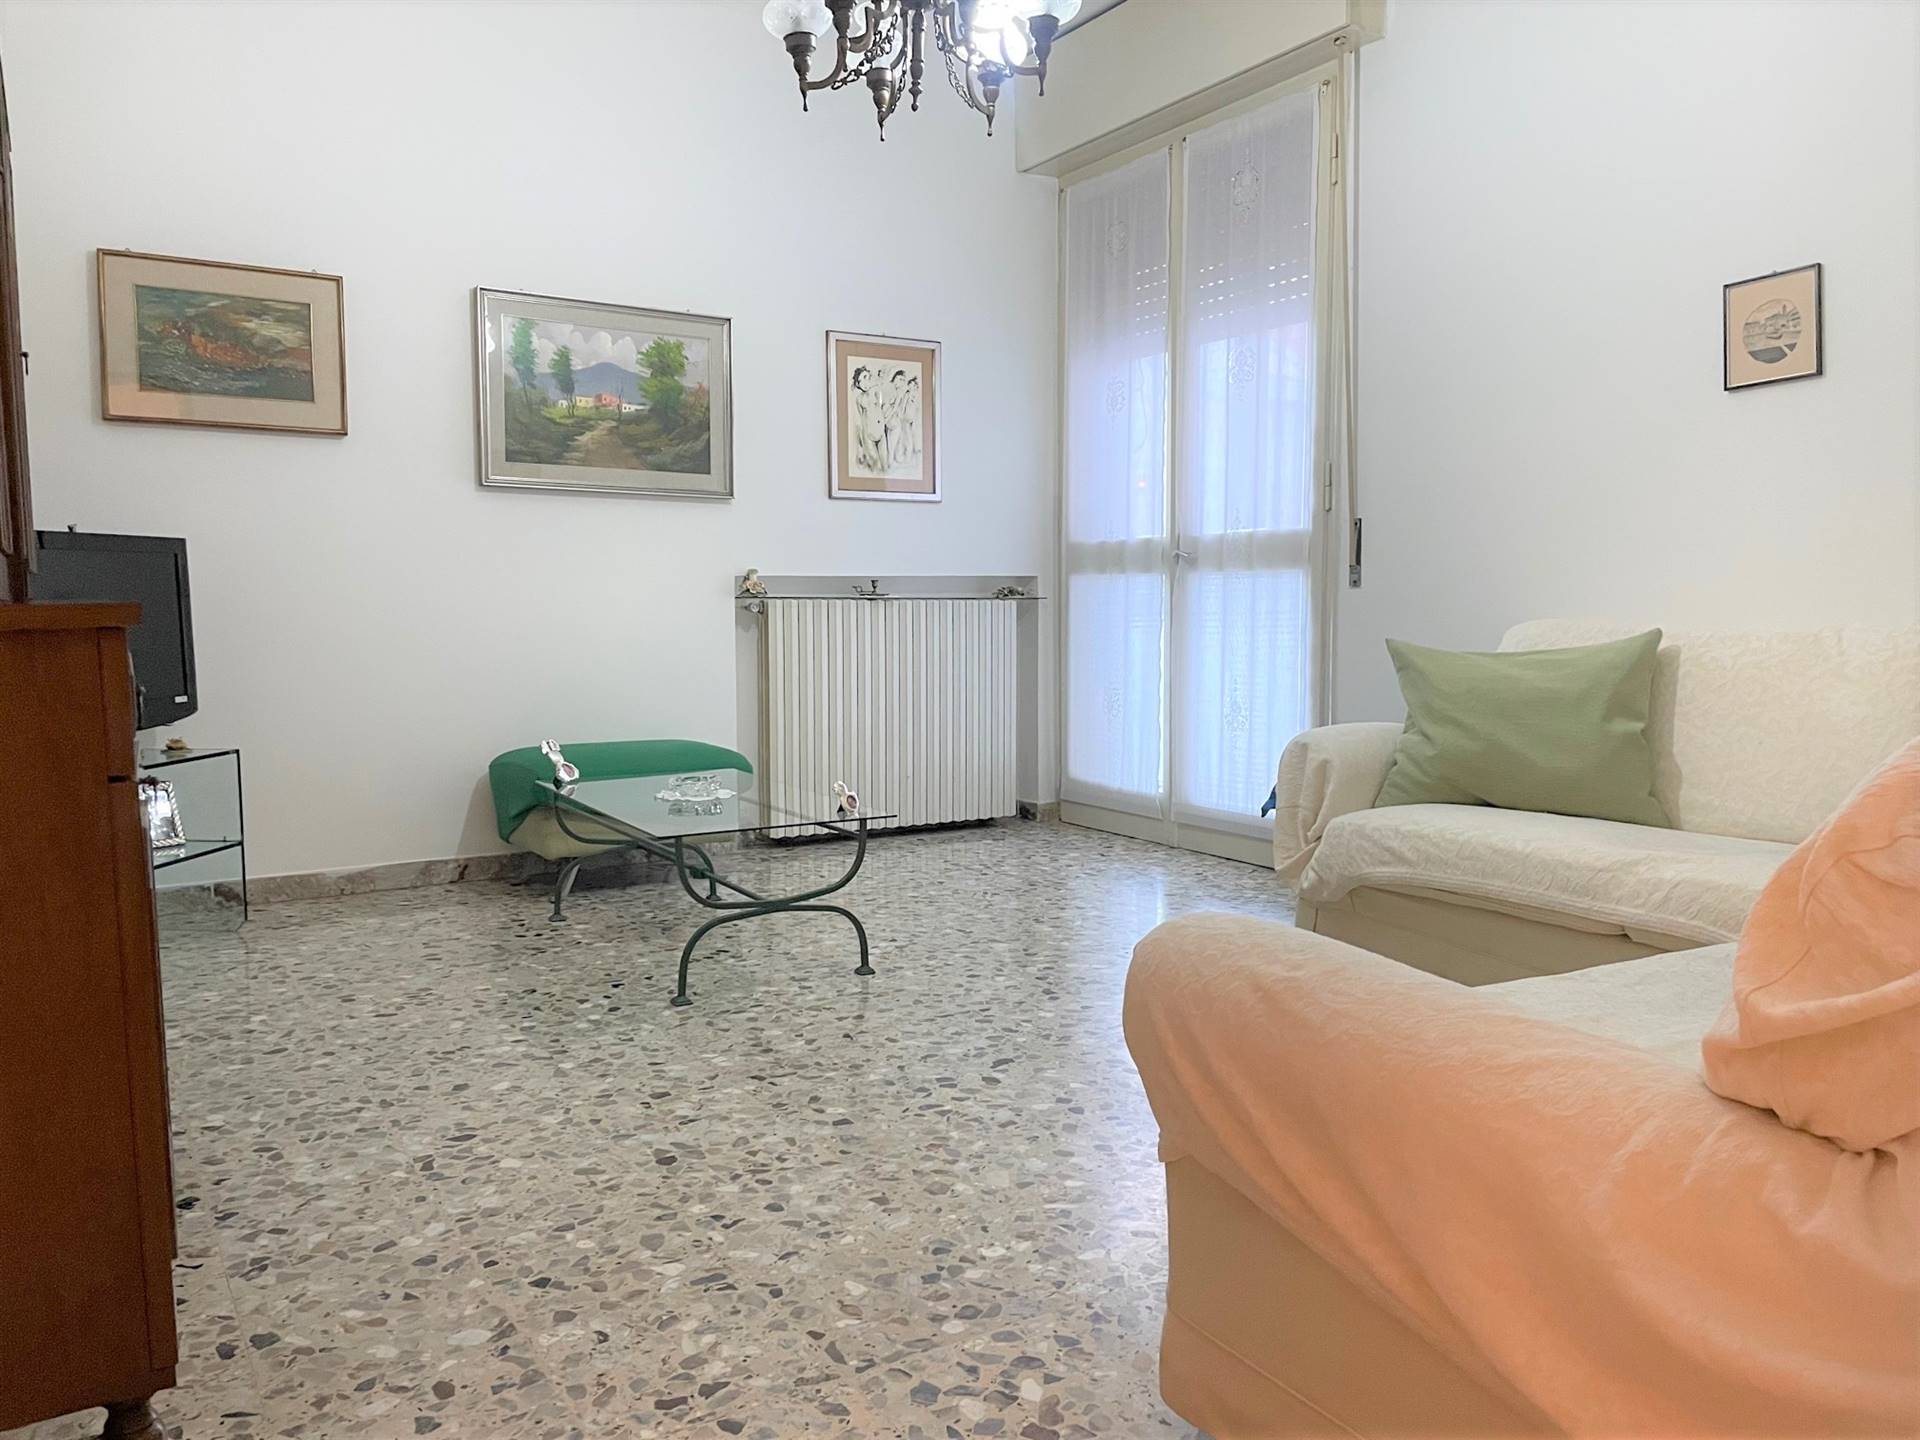 Appartamento in vendita a Mantova, 3 locali, zona Zona: Cittadella, prezzo € 57.000 | CambioCasa.it